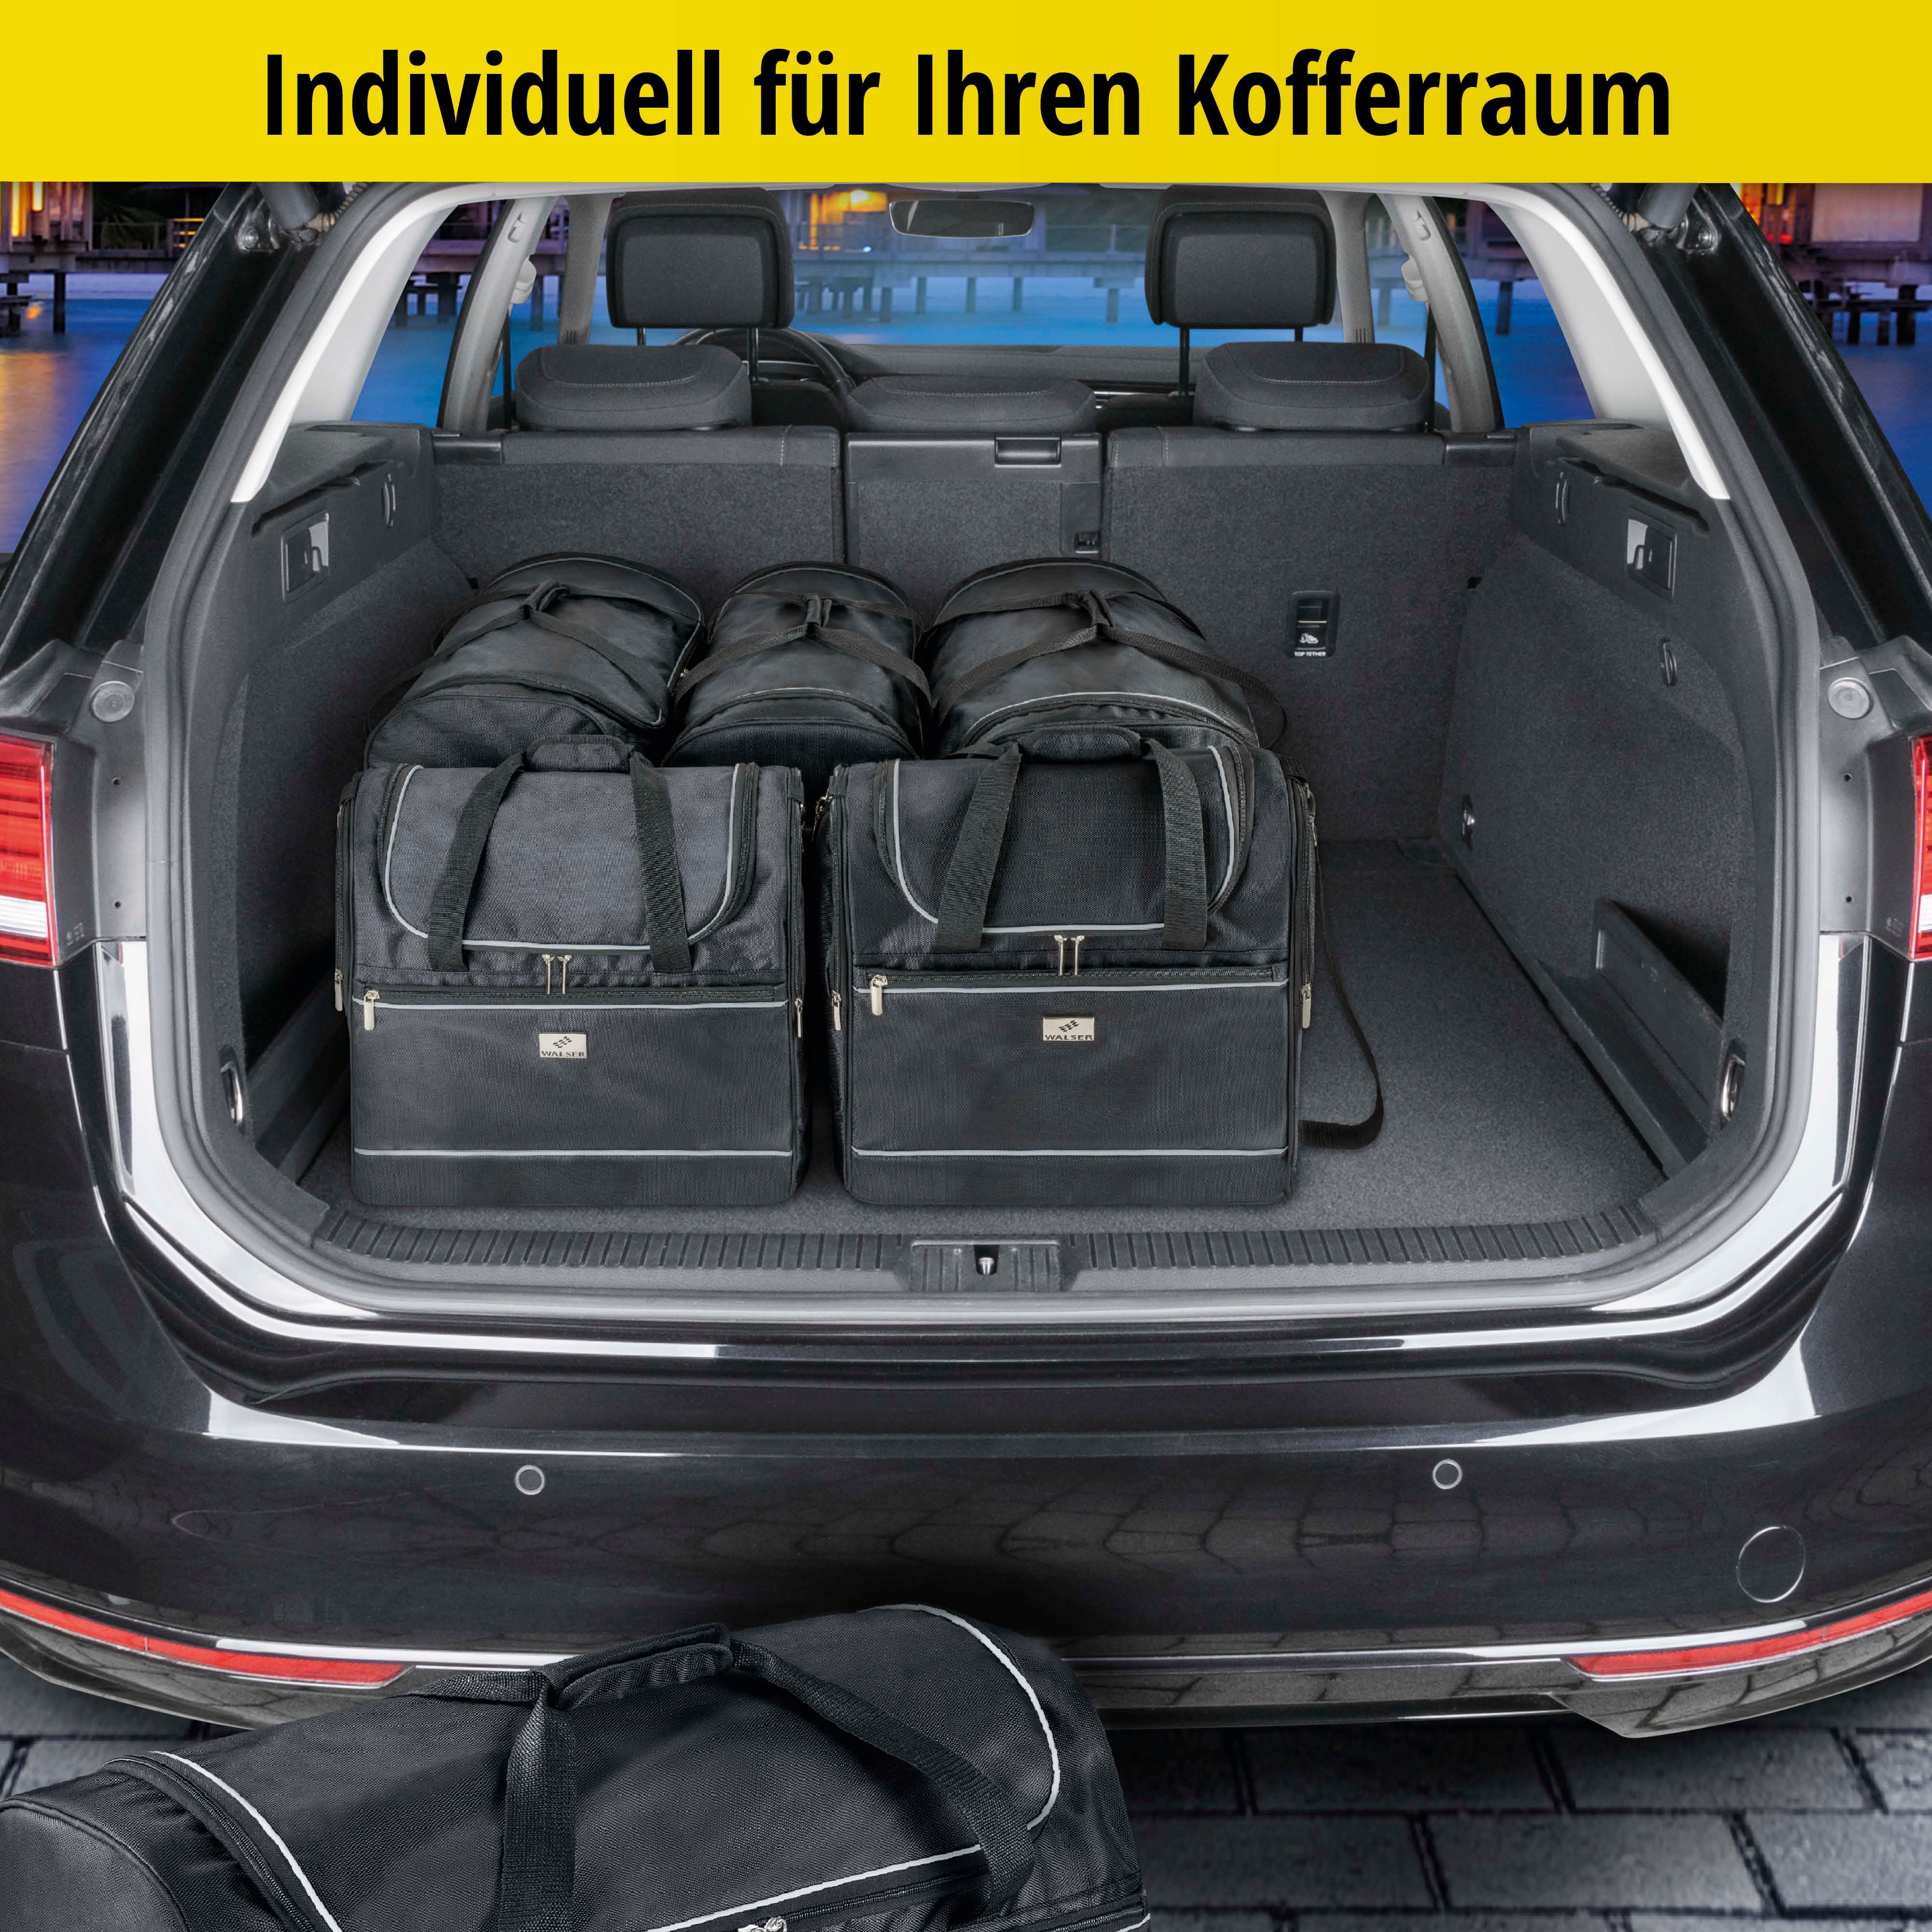 Carbags Reisetaschenset für VW Touran III (5T1) schwarz